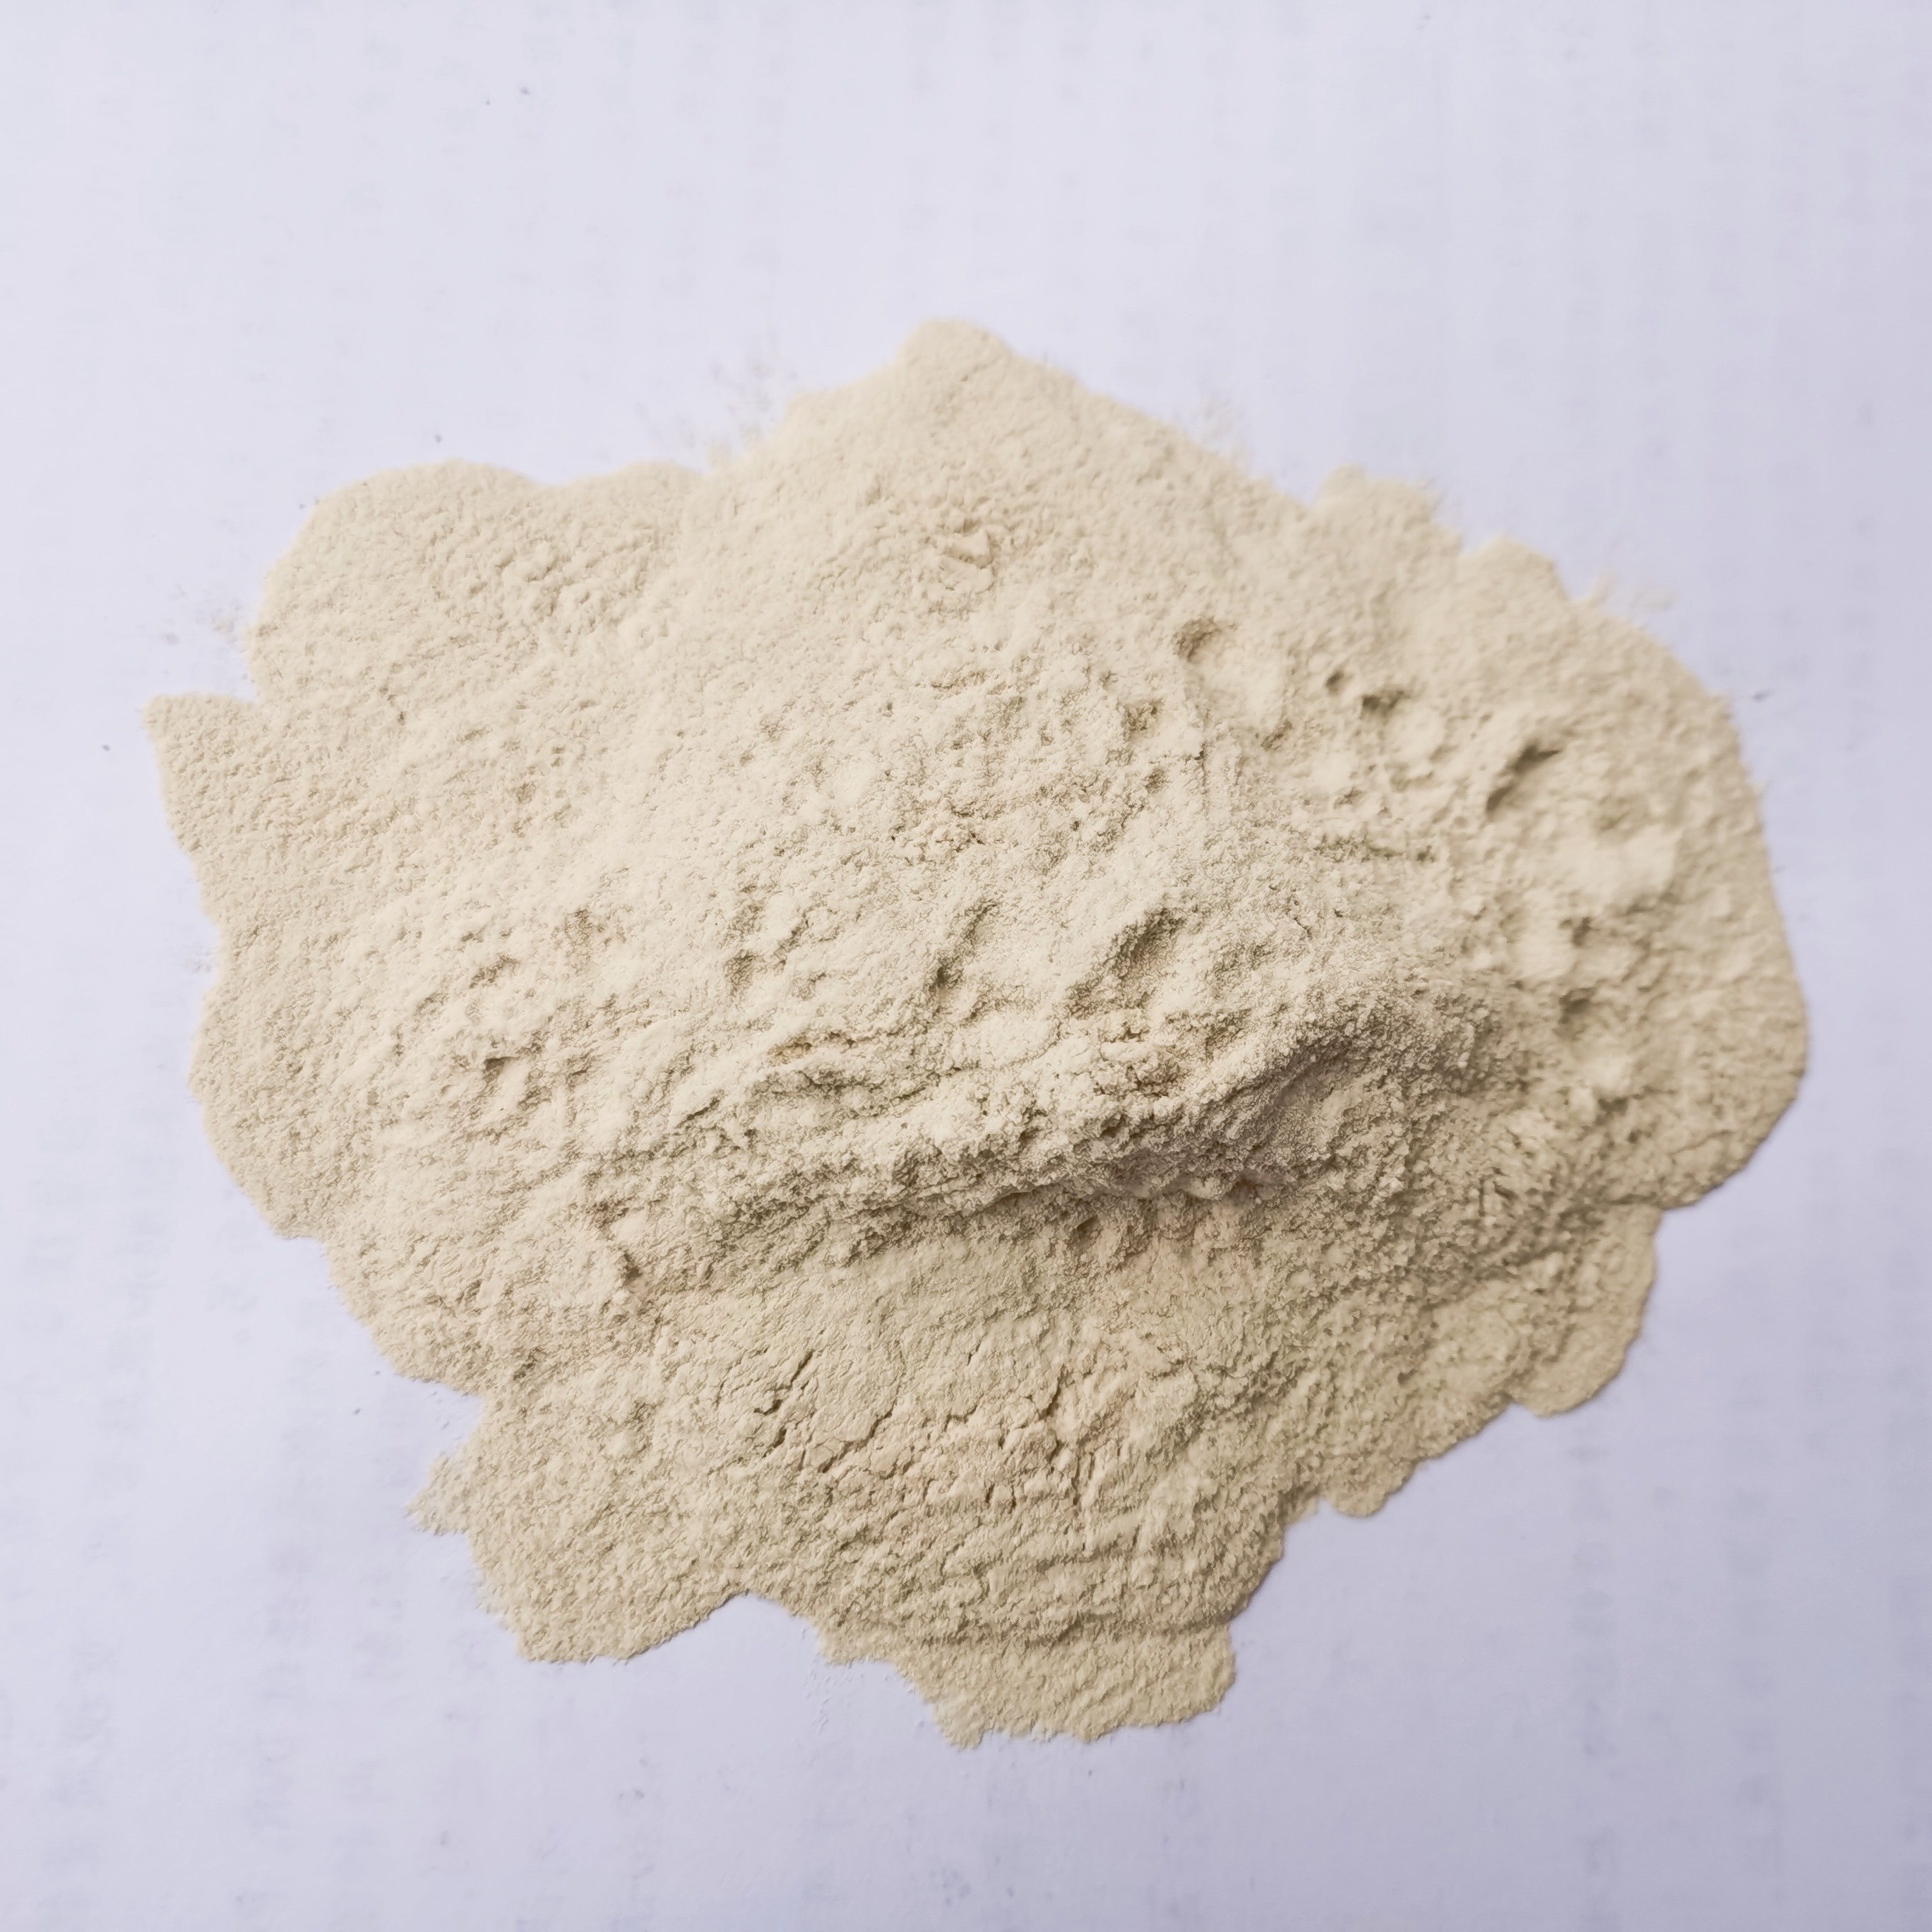 Quality Organic Fertilizer Enzymatic Hydrolysis Amino Acid 80% Powder For Plants wholesale